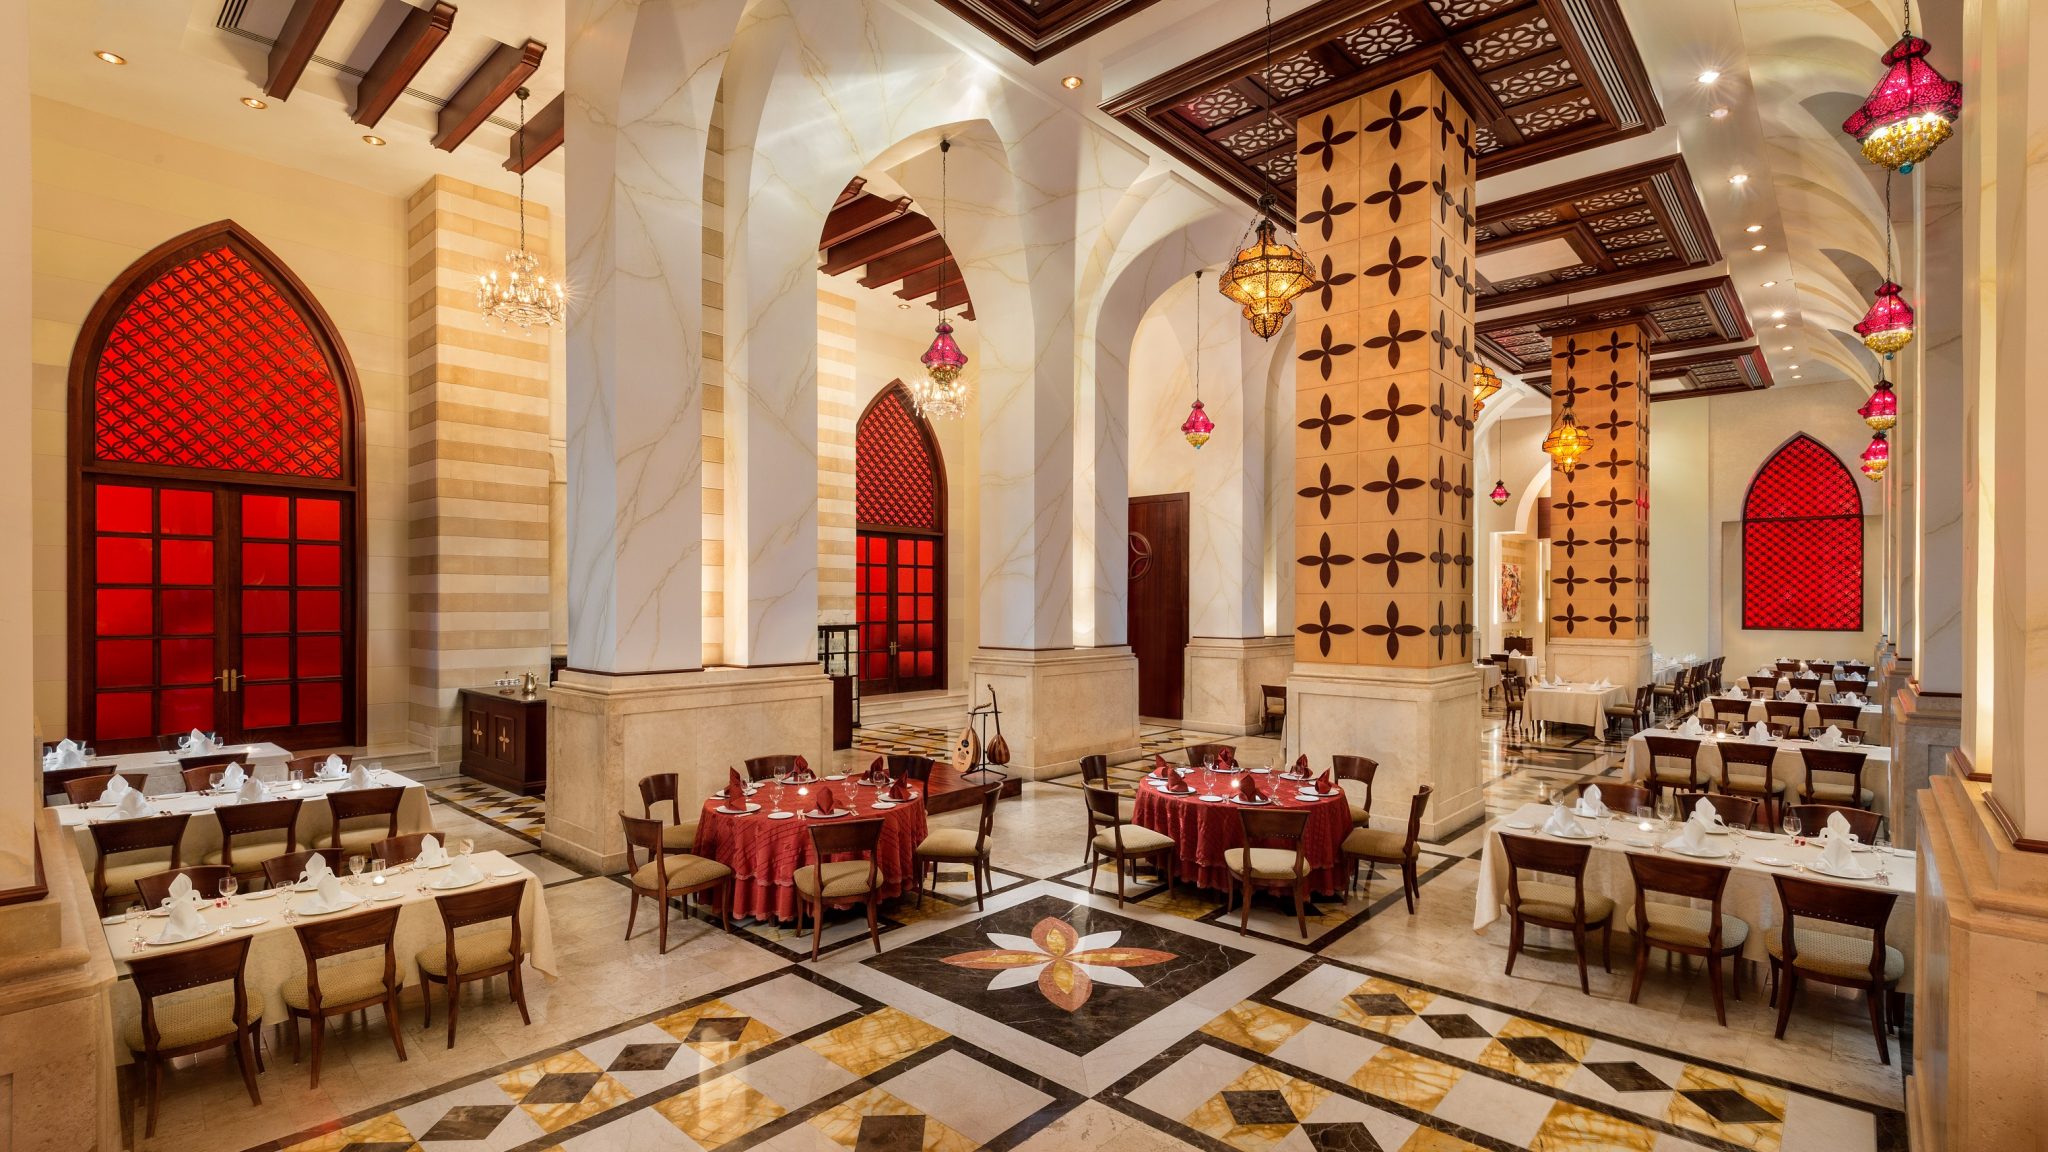 إستمتعوا بأفضل تجارب الطعام في فندق قصر الإمارات